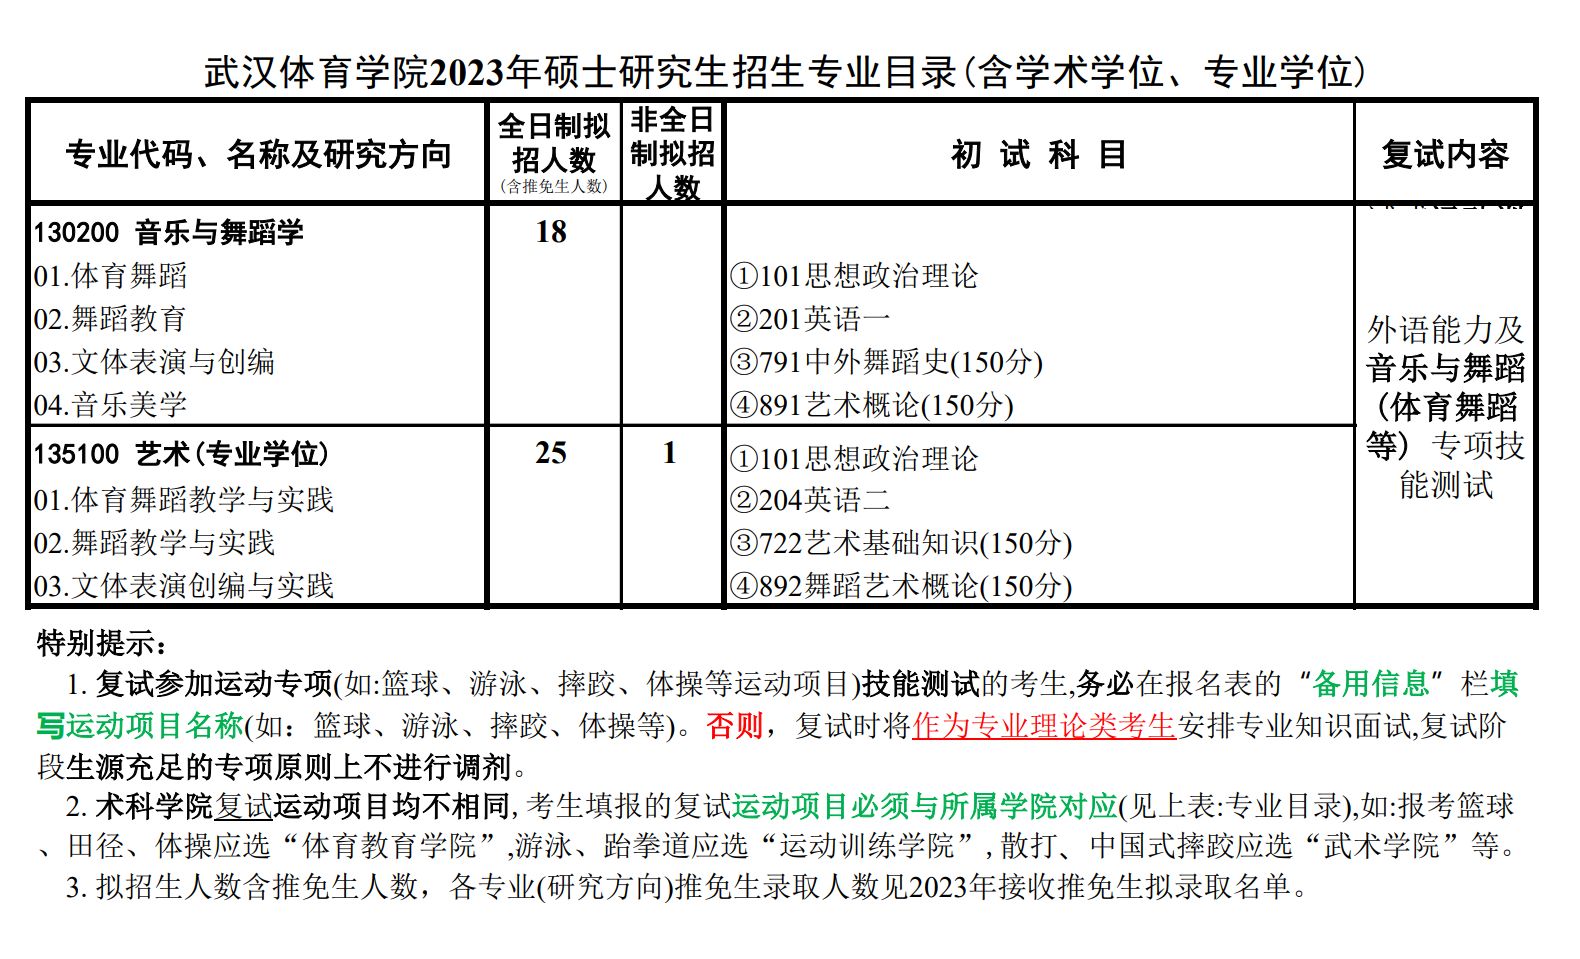 2023年武汉体育学院舞蹈硕士研究生音乐与舞蹈学专业、艺术（专业学位）招生简章、招生目录、初试考试大纲及范围、招生人数